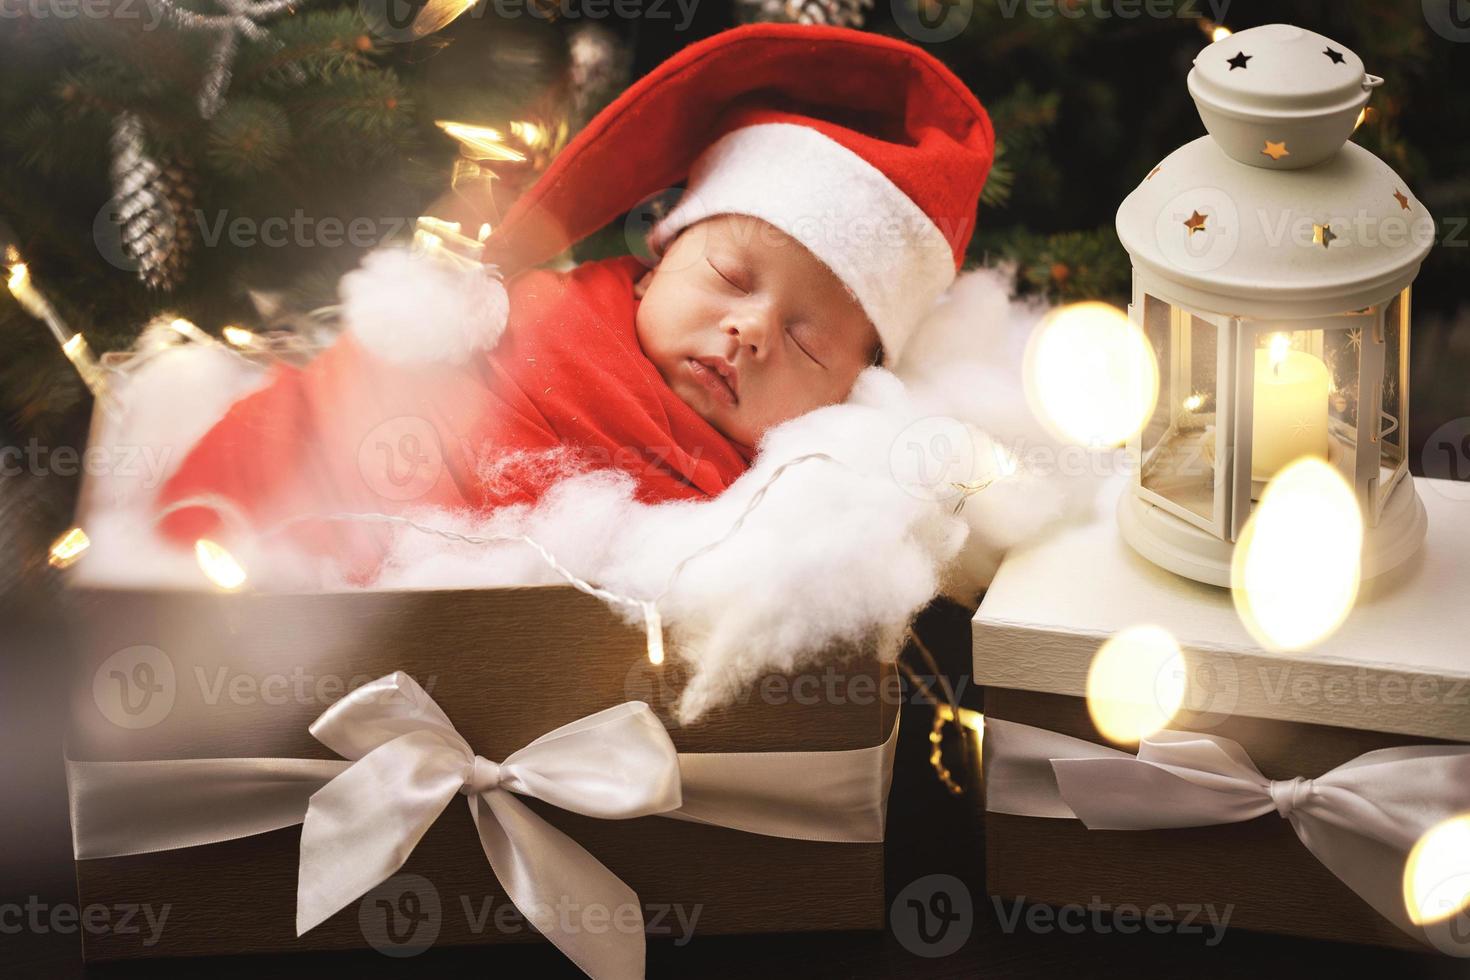 lindo bebé recién nacido con sombrero de santa claus está durmiendo en la caja de regalo de navidad foto